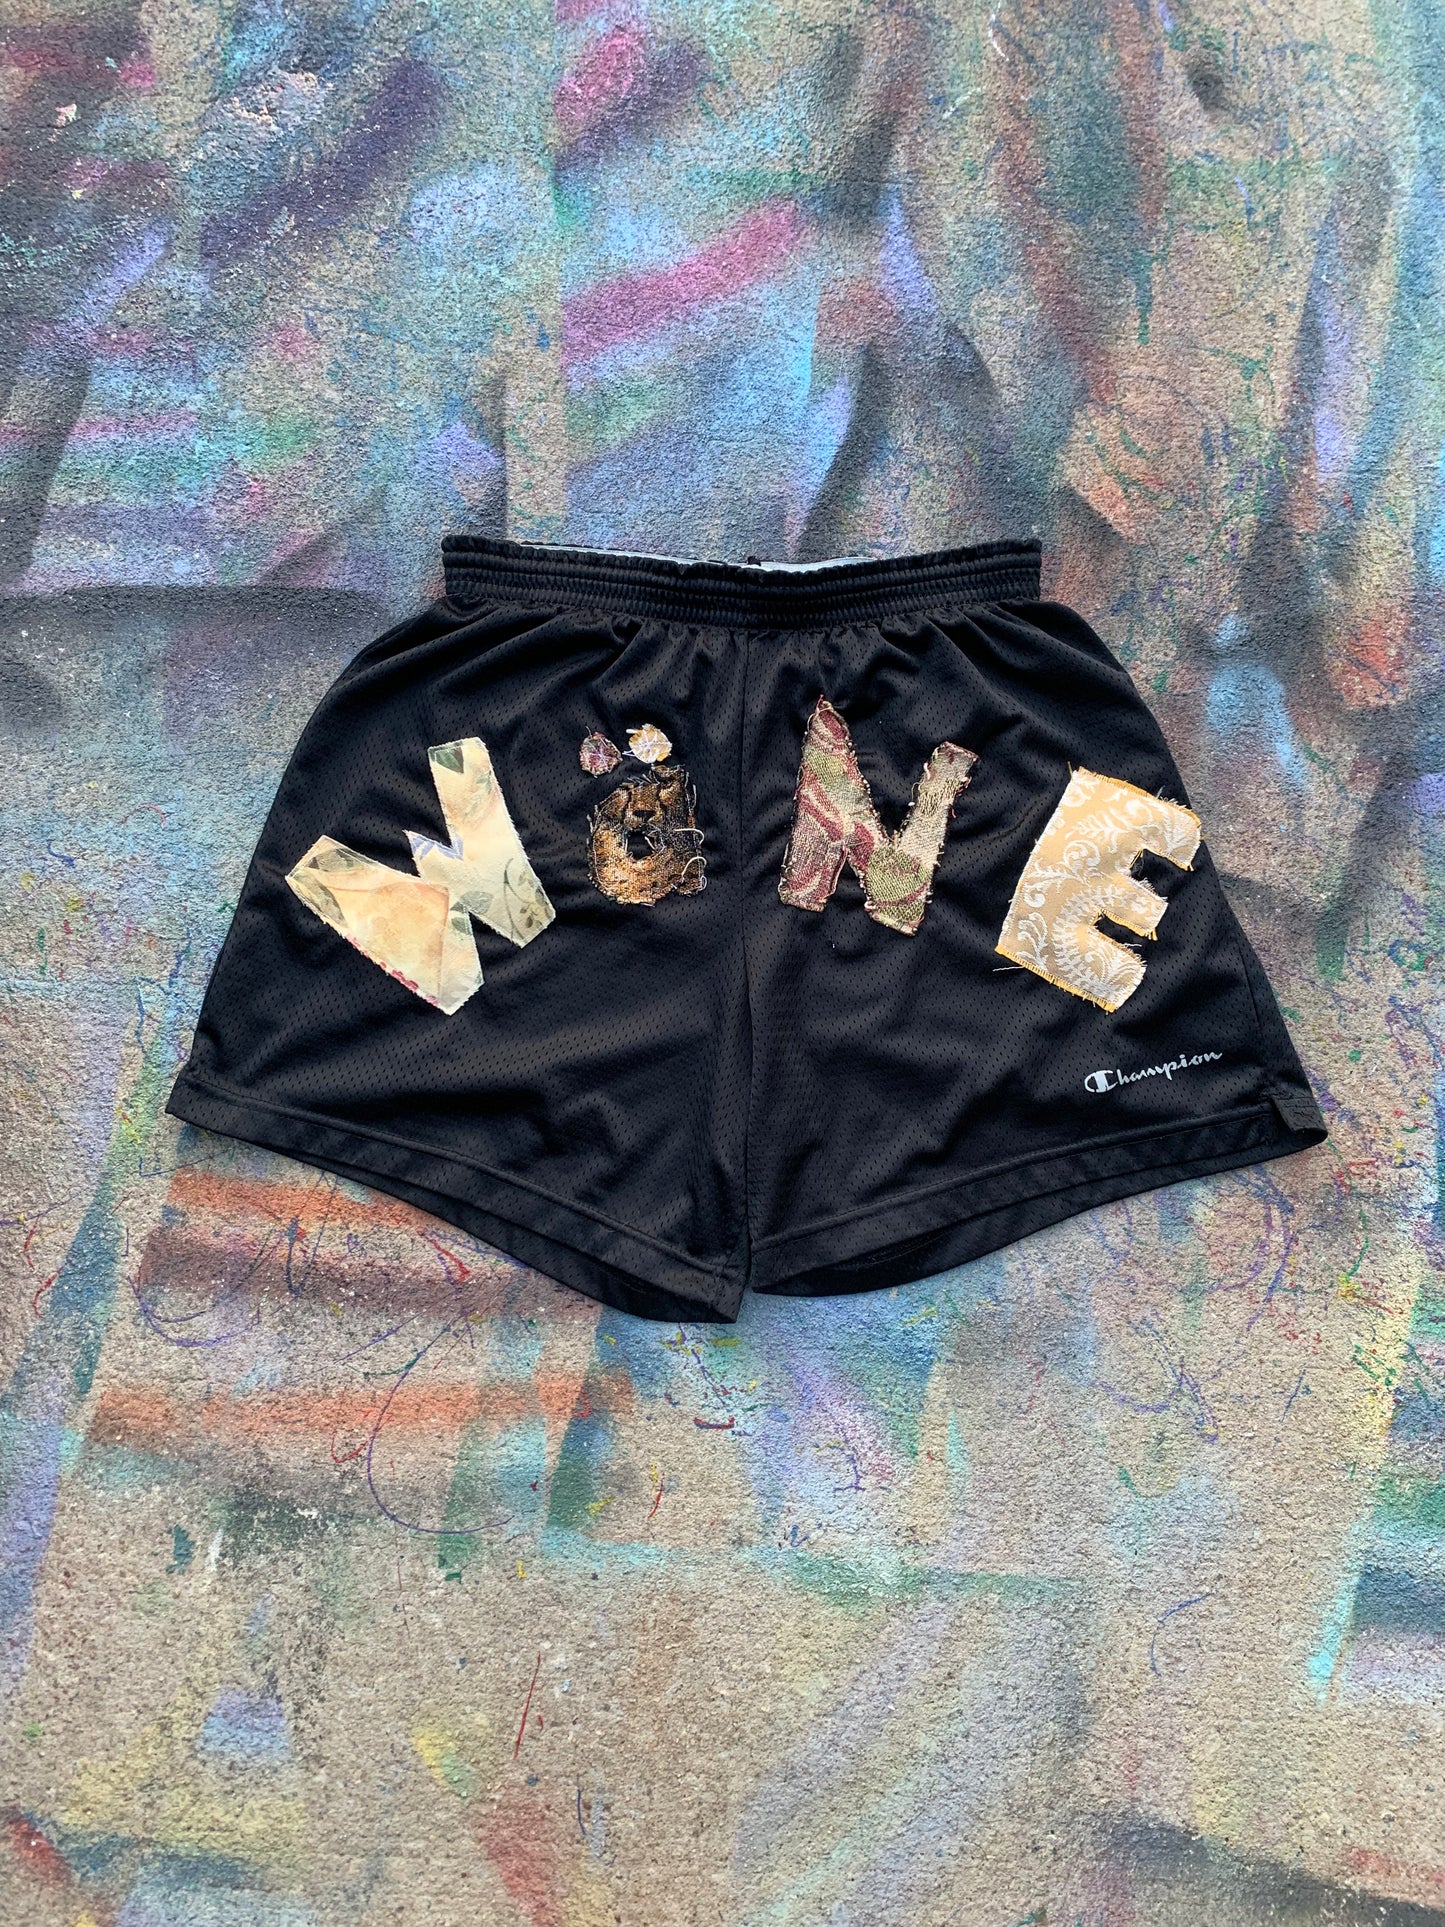 Wäne Wear Shorts (Tan/Black)- L